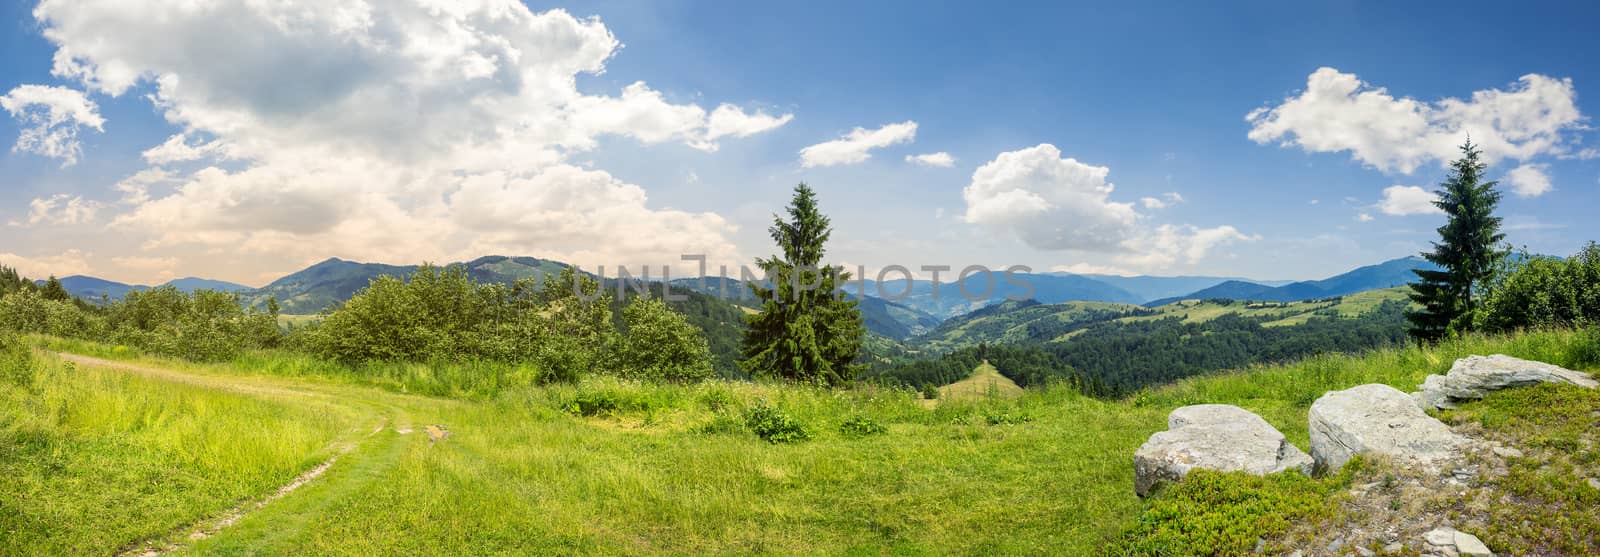 boulders on hillside meadow in mountain by Pellinni